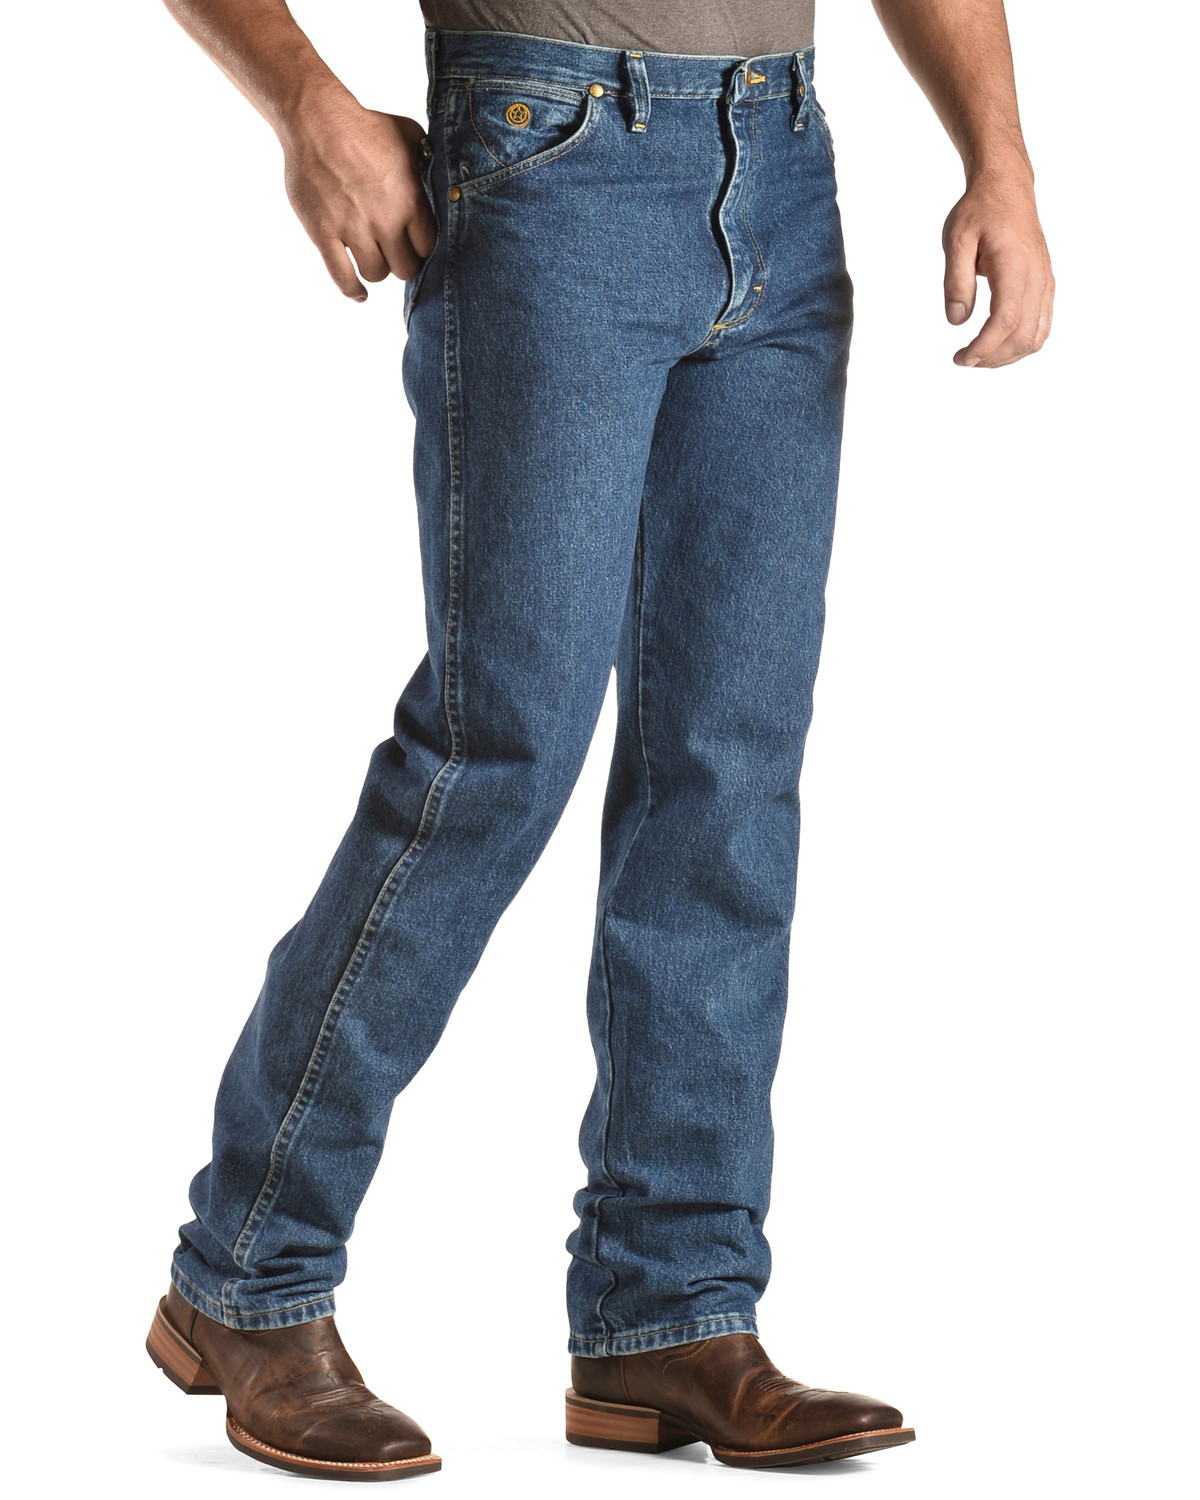 Wrangler George Strait Cowboy Cut Original Fit Jeans - 38